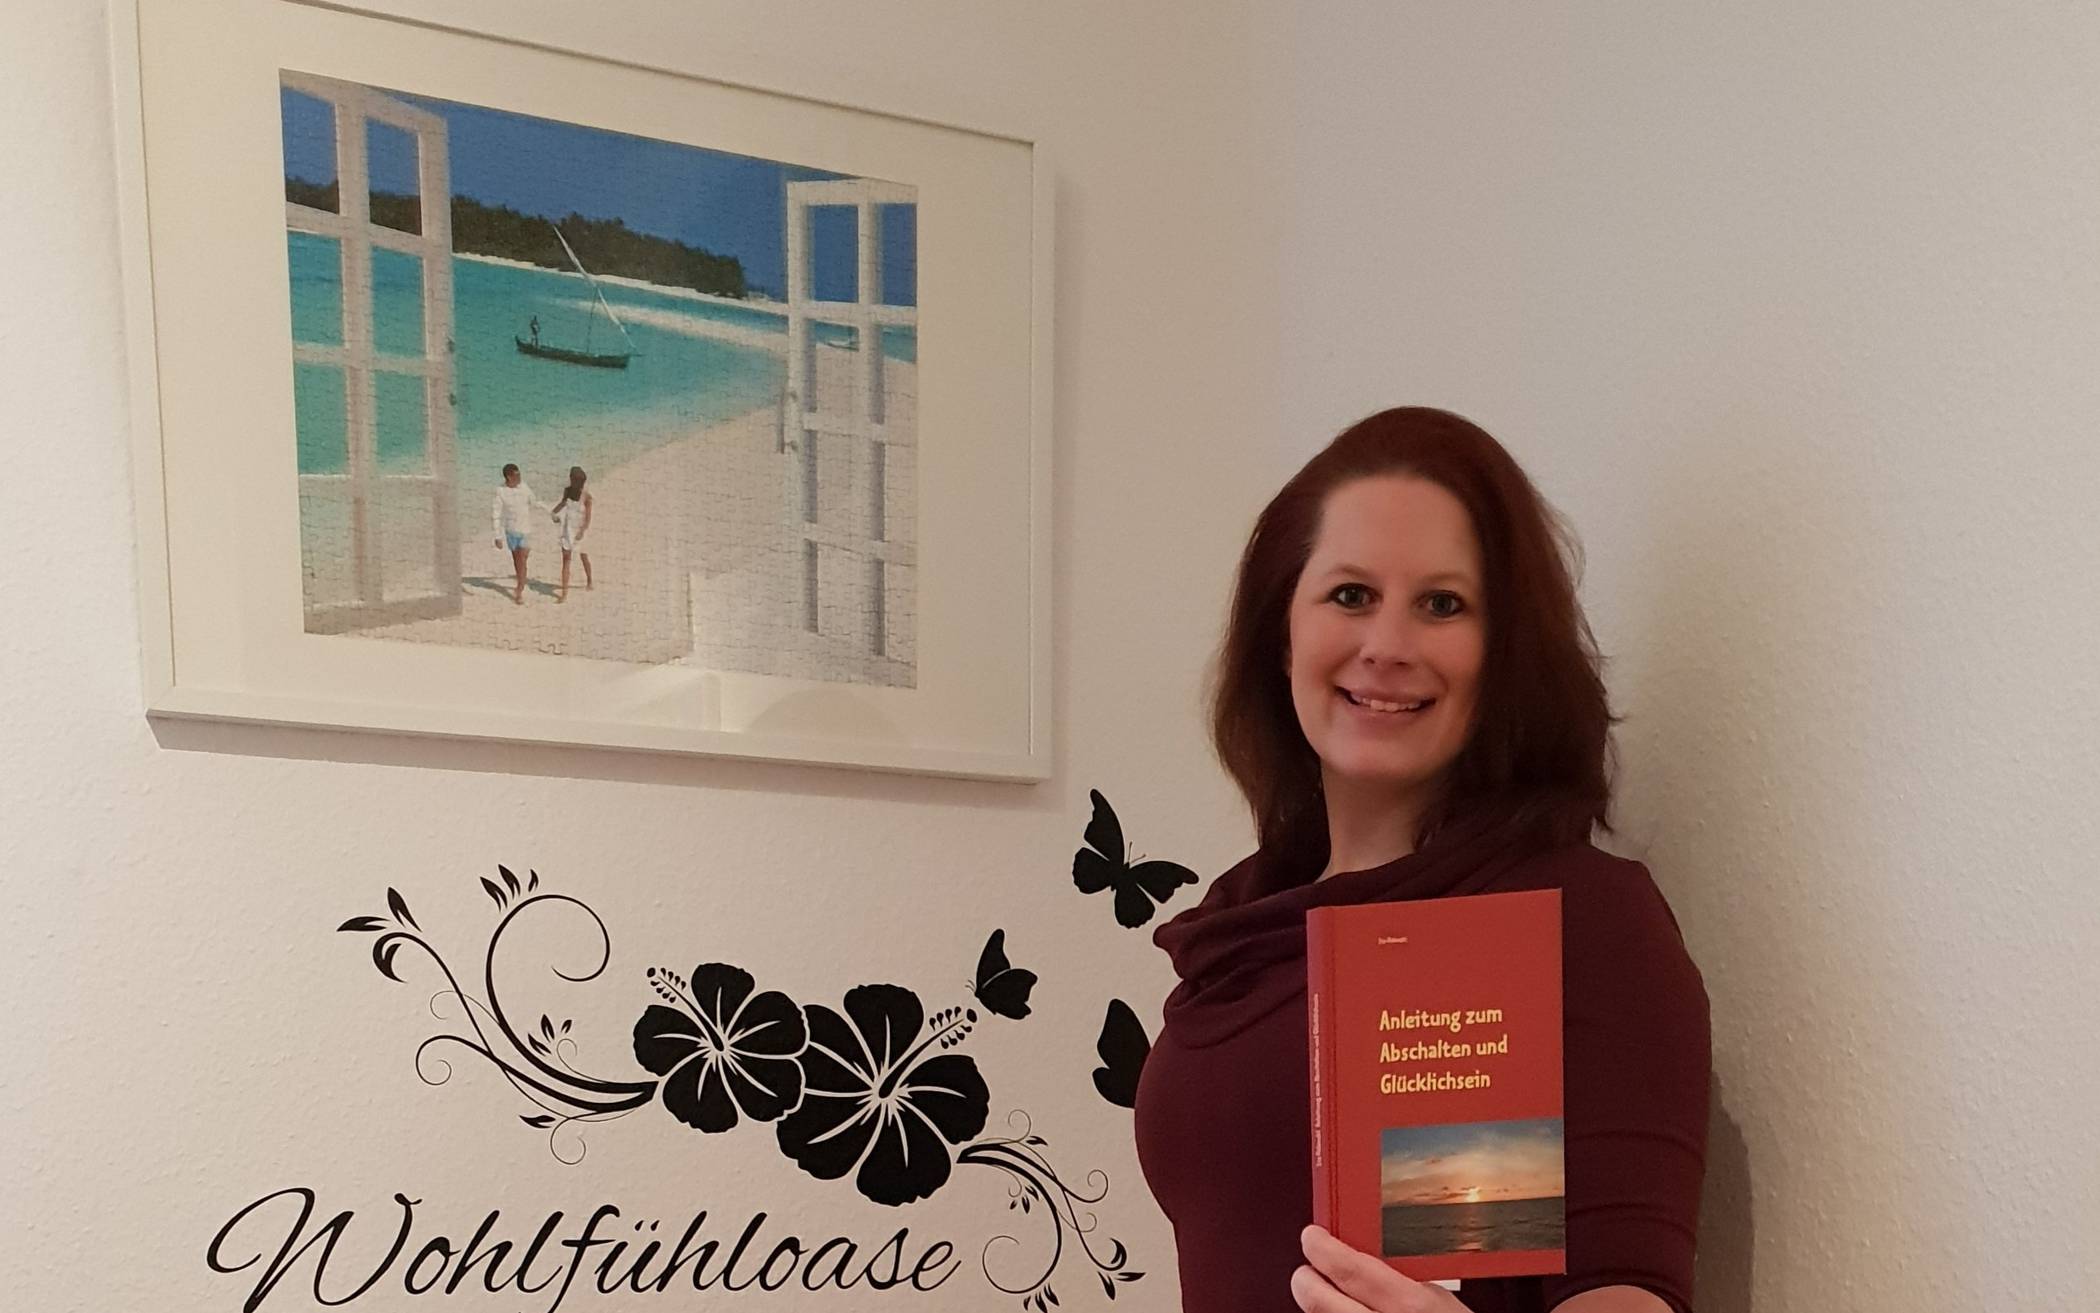  Liz Polanzki mit ihrem Buch „Anleitung zum Abschalten und Glücklichsein“. 